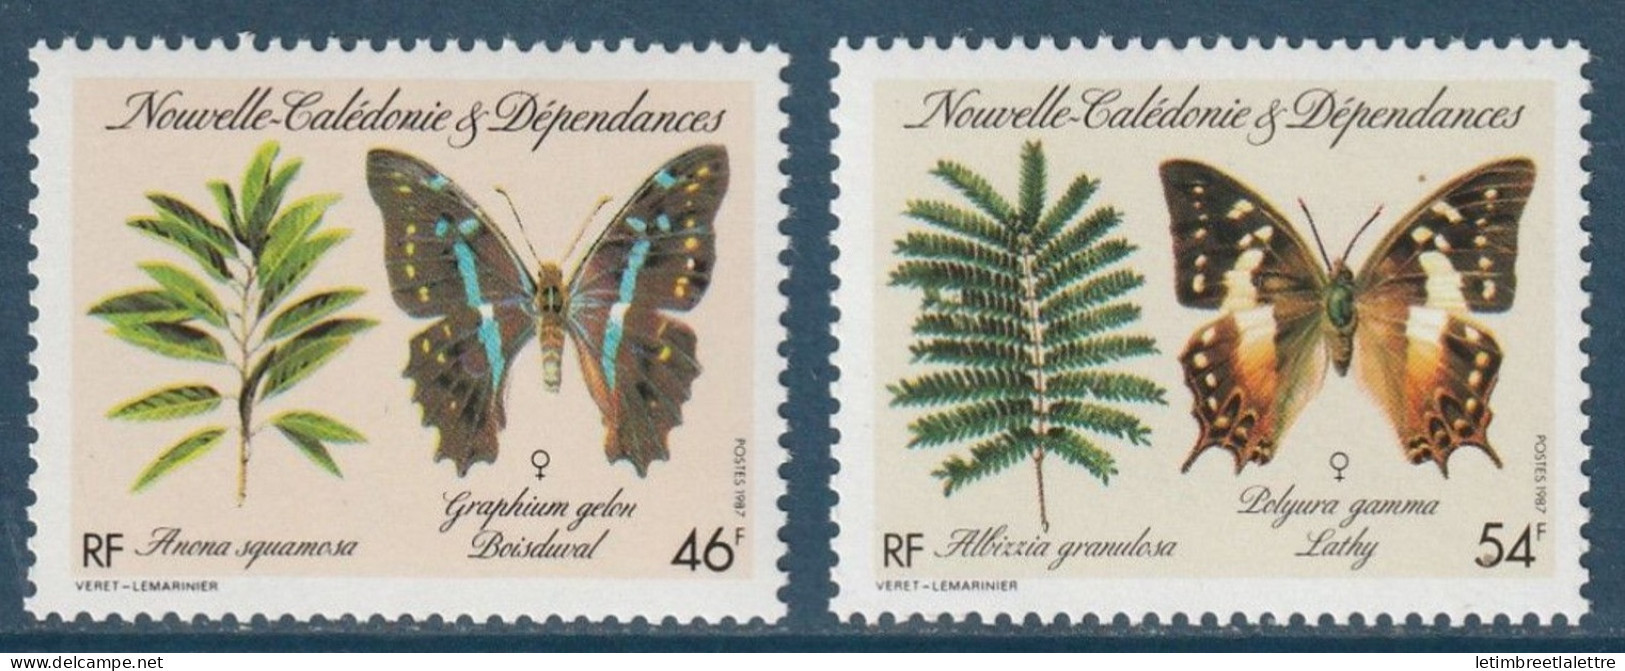 Nouvelle Calédonie - YT N° 533 Et 534 ** - Neuf Sans Charnière - 1987 - Unused Stamps